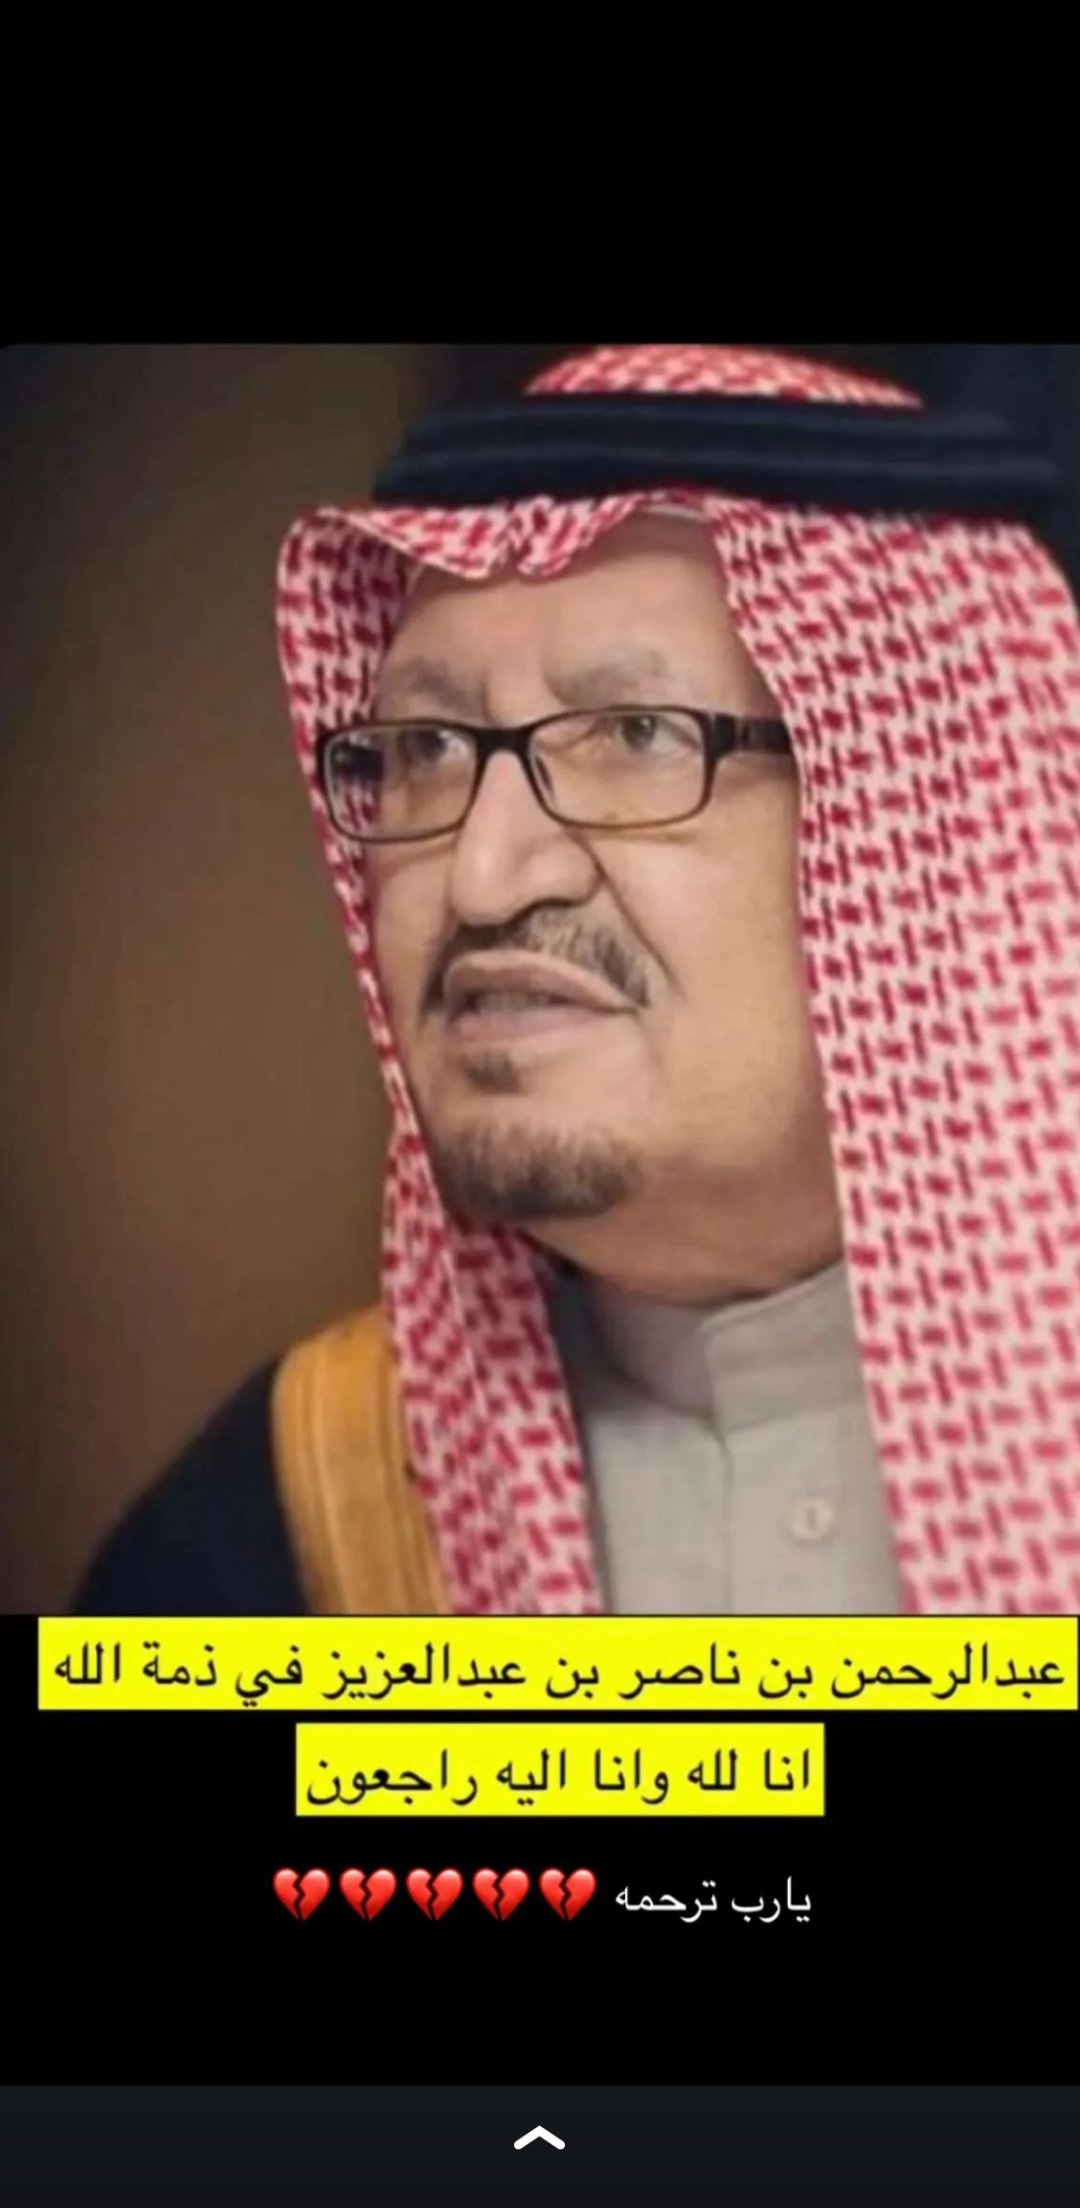 سبب وفاة الأمير عبدالرحمن بن ناصر بن عبدالعزيز آل سعود